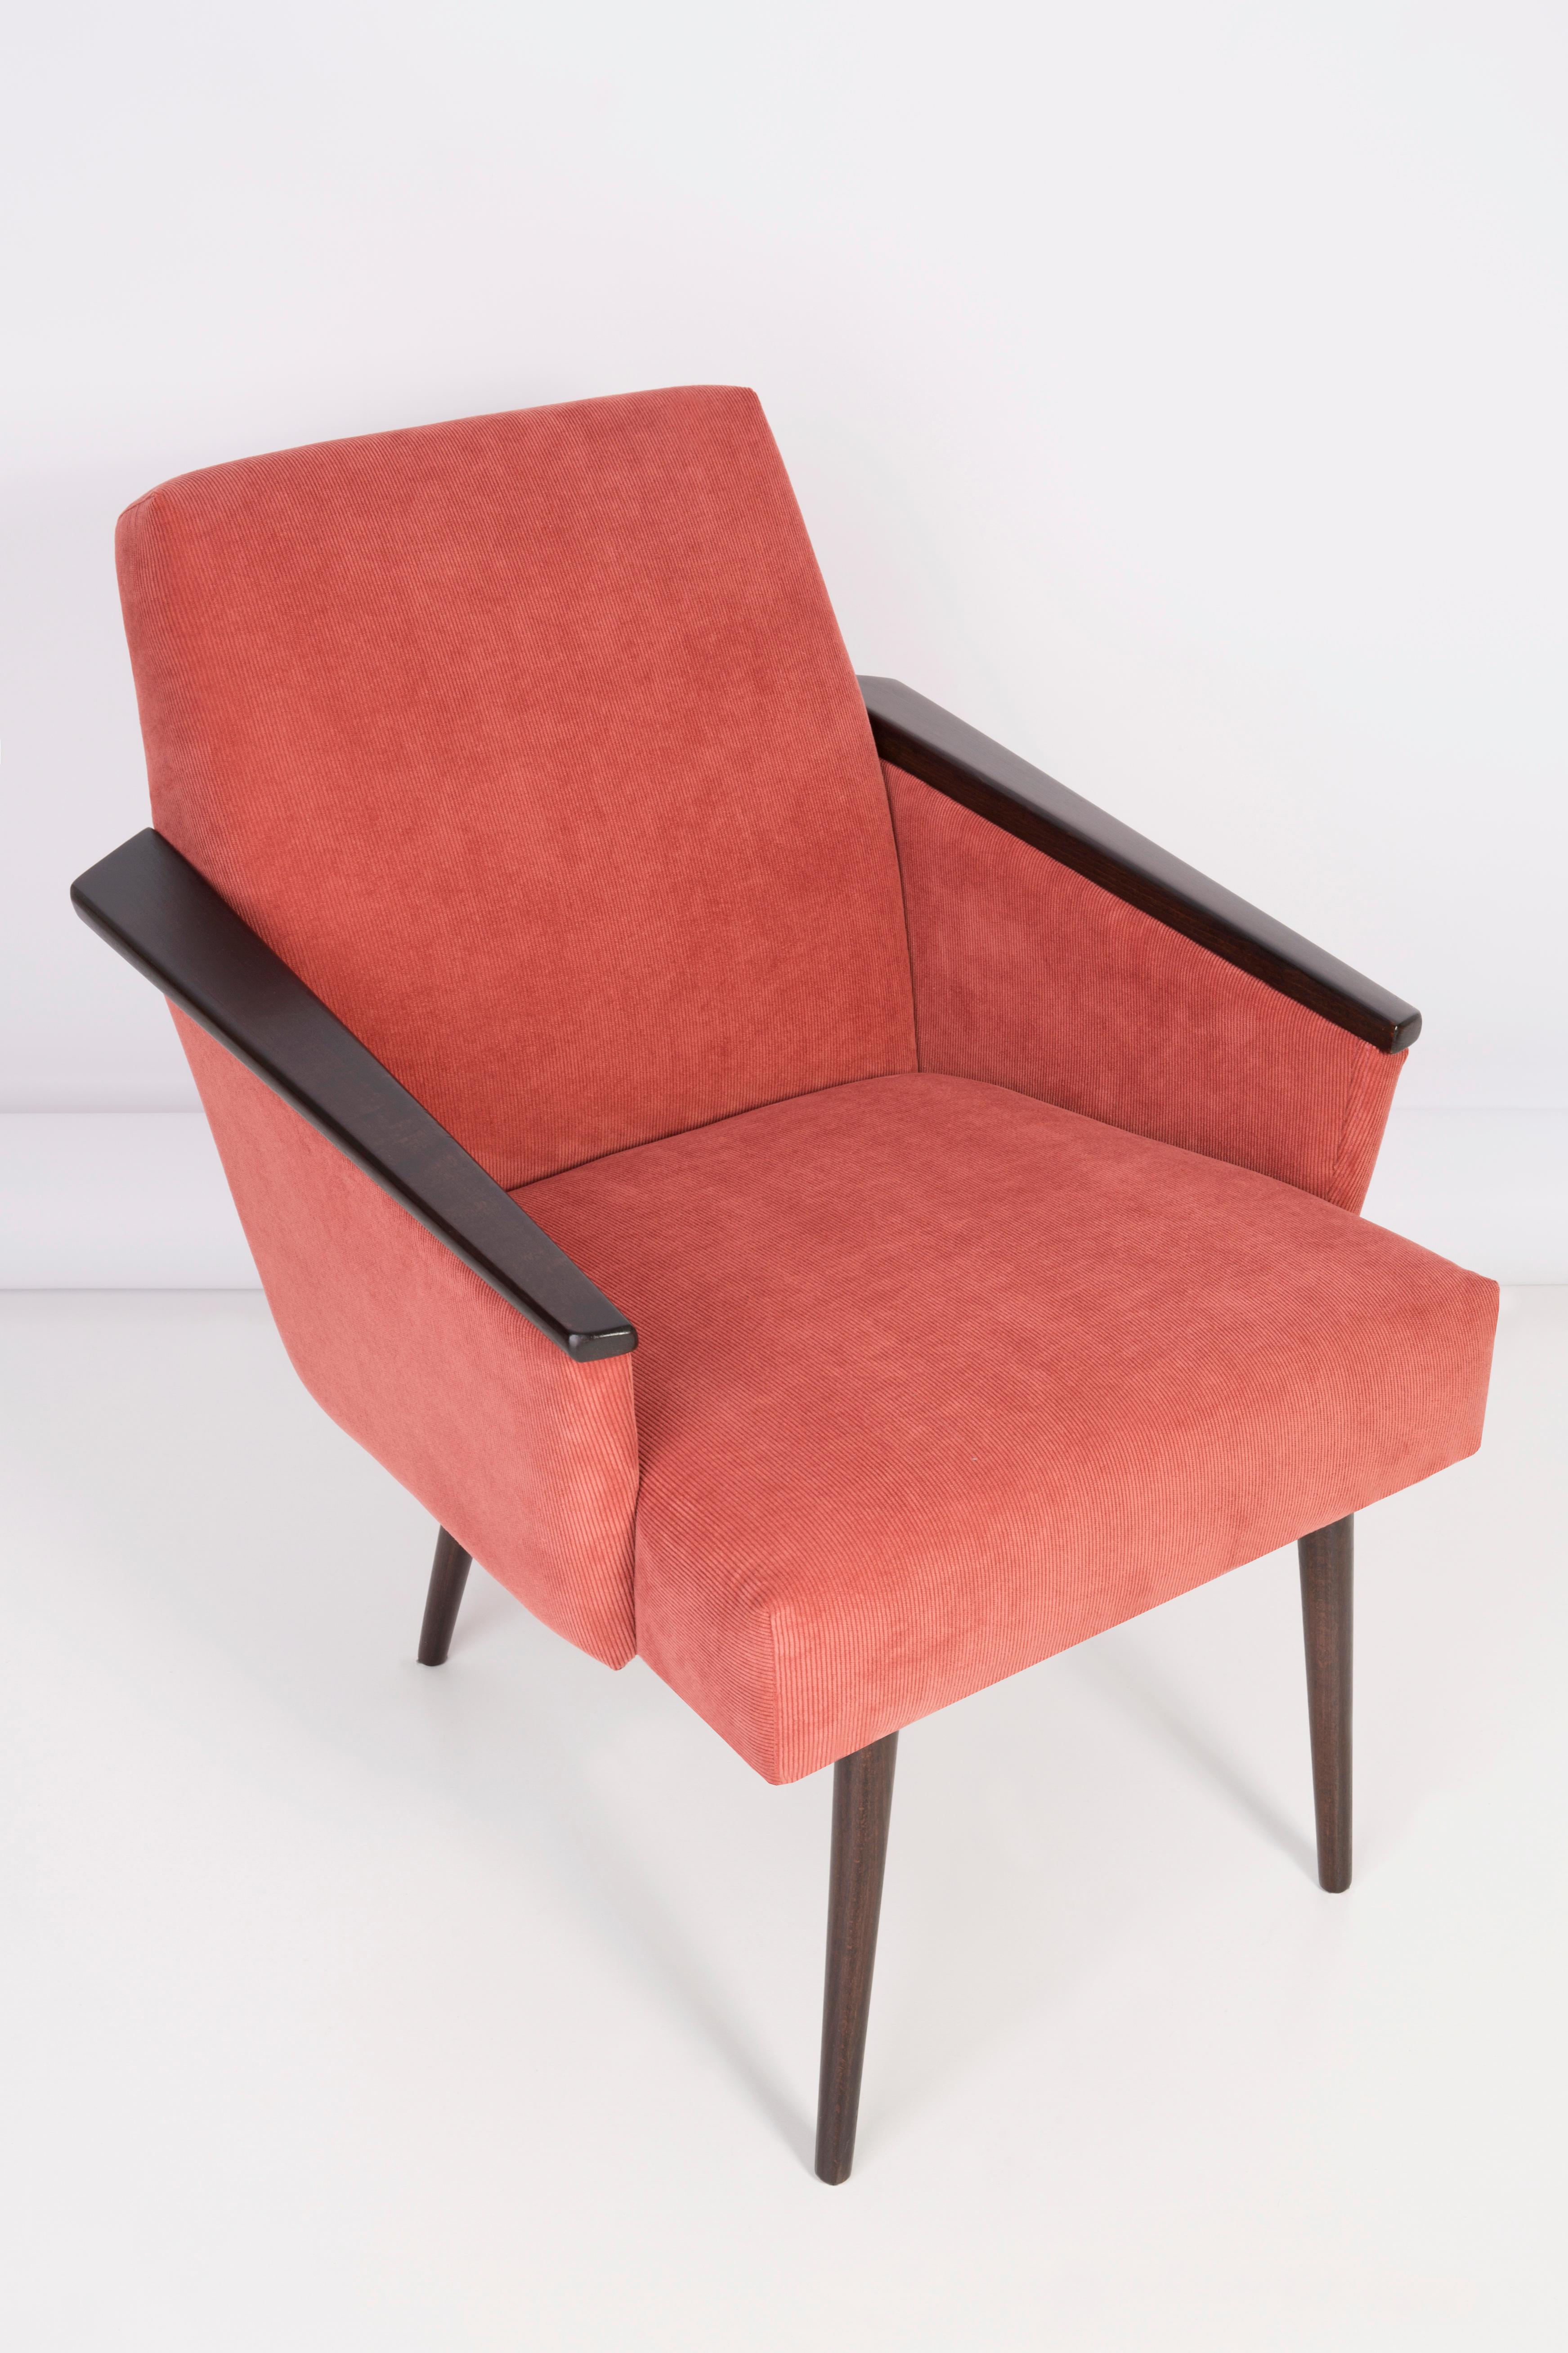 Deutscher Sessel, hergestellt in den 1960er Jahren in Berlin. Der Sessel ist nach einer gründlichen Renovierung der Polsterung und Tischlerei. Der Holzrahmen wird gründlich gereinigt und mit einem seidenmatten Lack in der Farbe des Palisanders